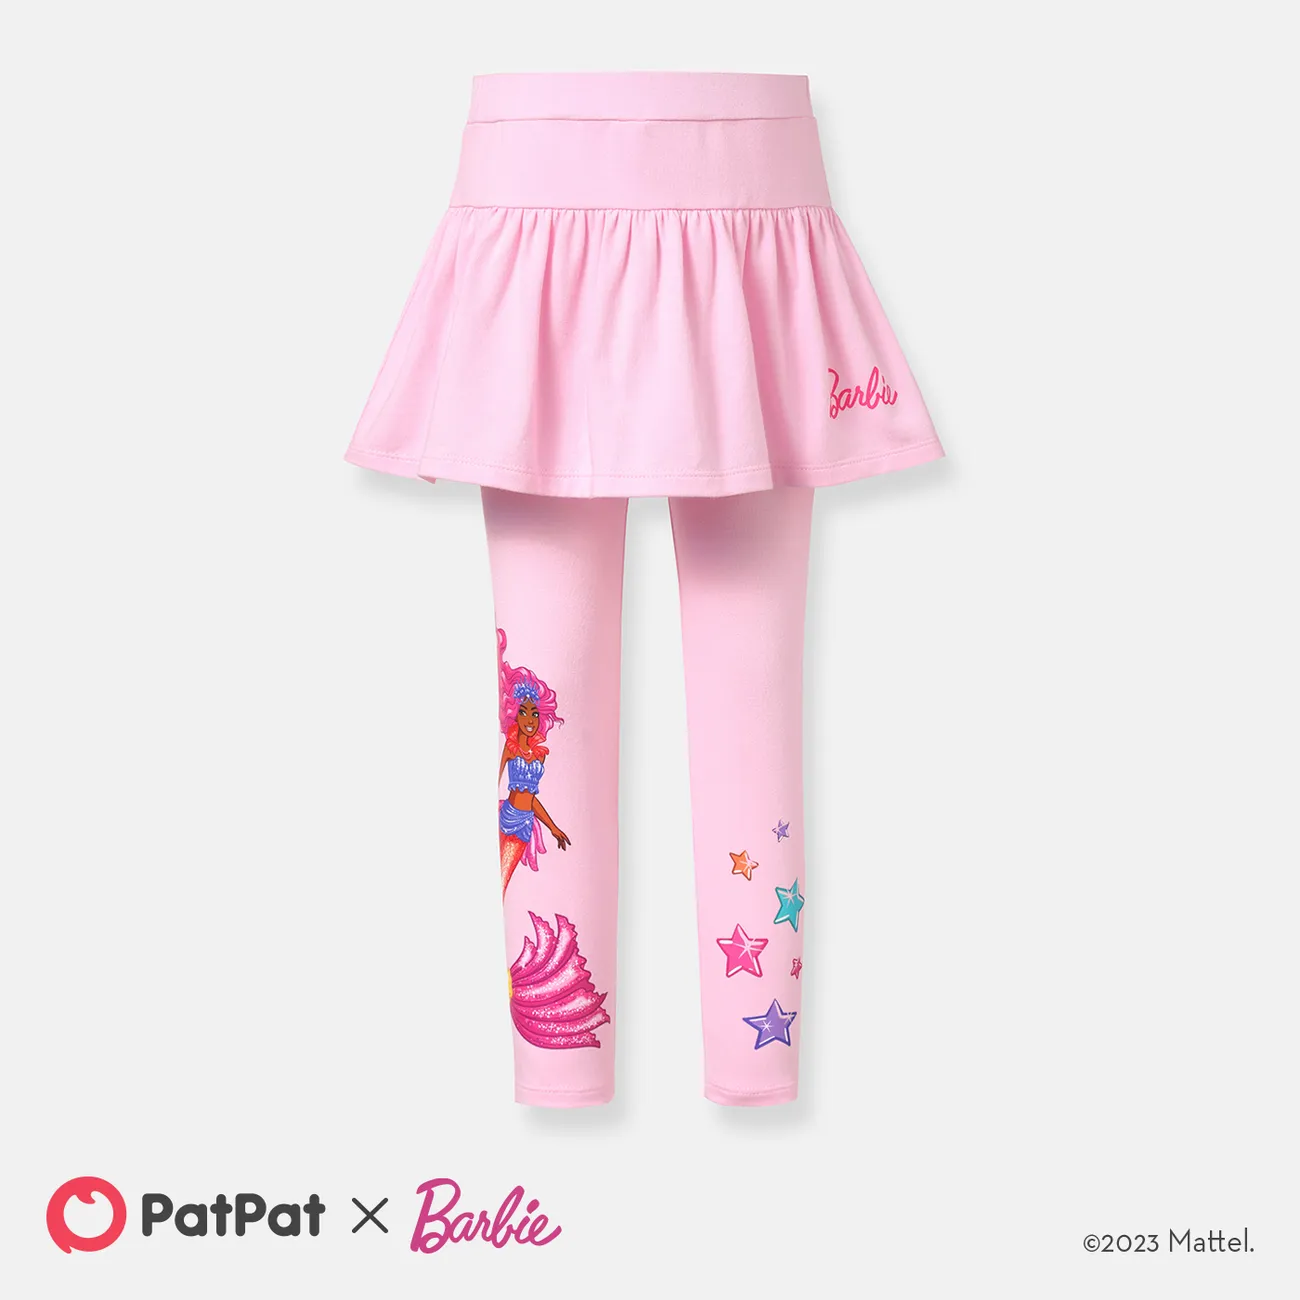 Barbie Toddler Girl Cotton Stars Print Skirt Leggings Only د.ب.‏ 7.70 بات  بات Mobile